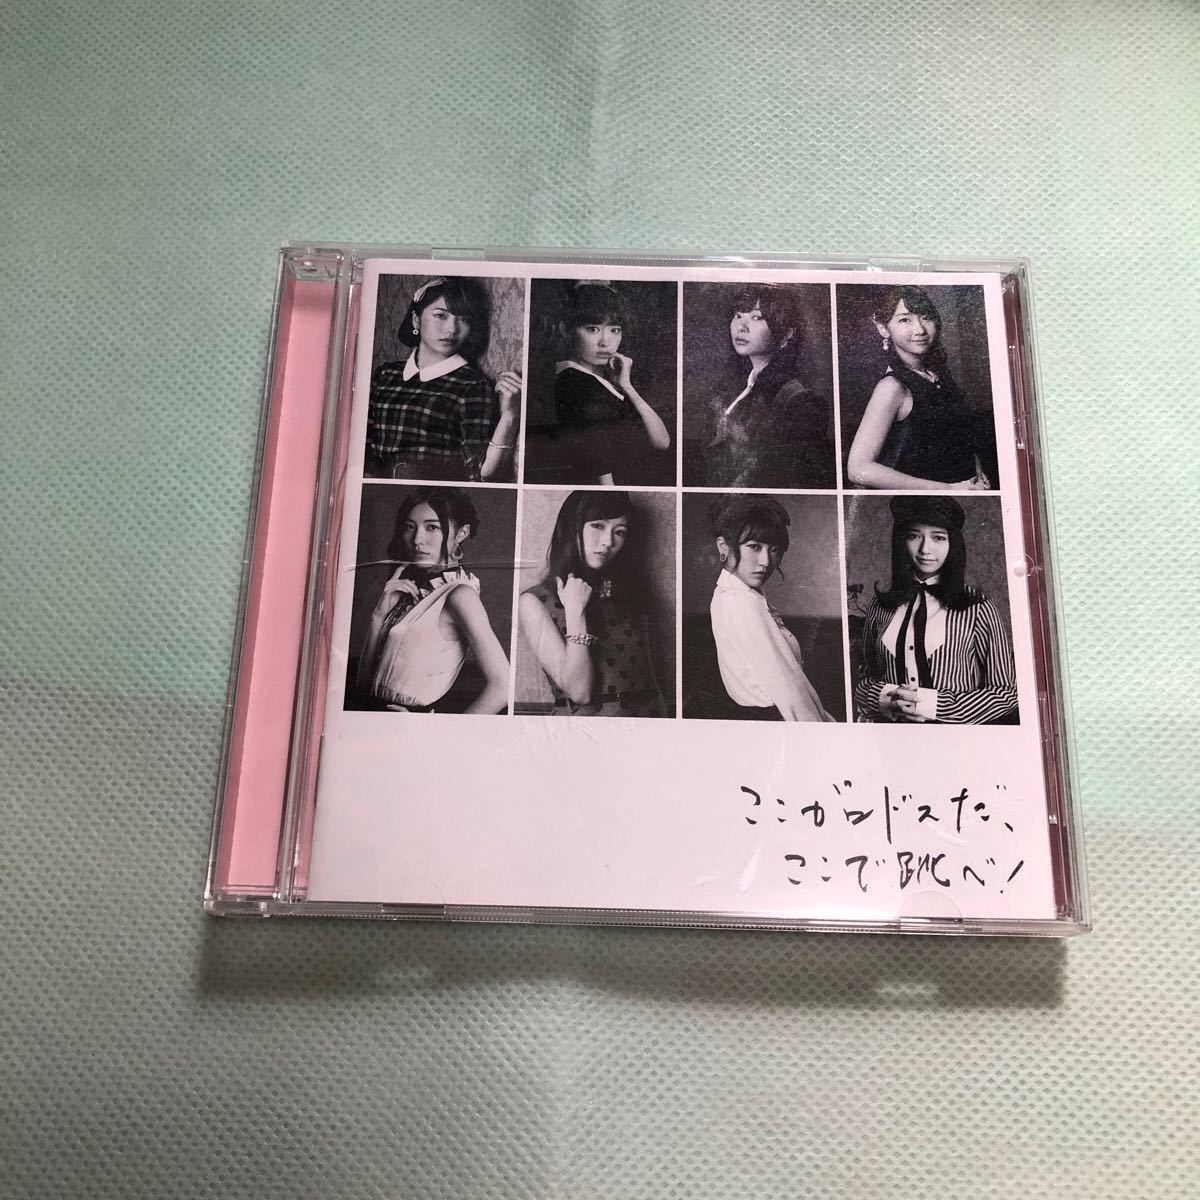 中古CD 邦楽 セット NYC AKB48 LinQ